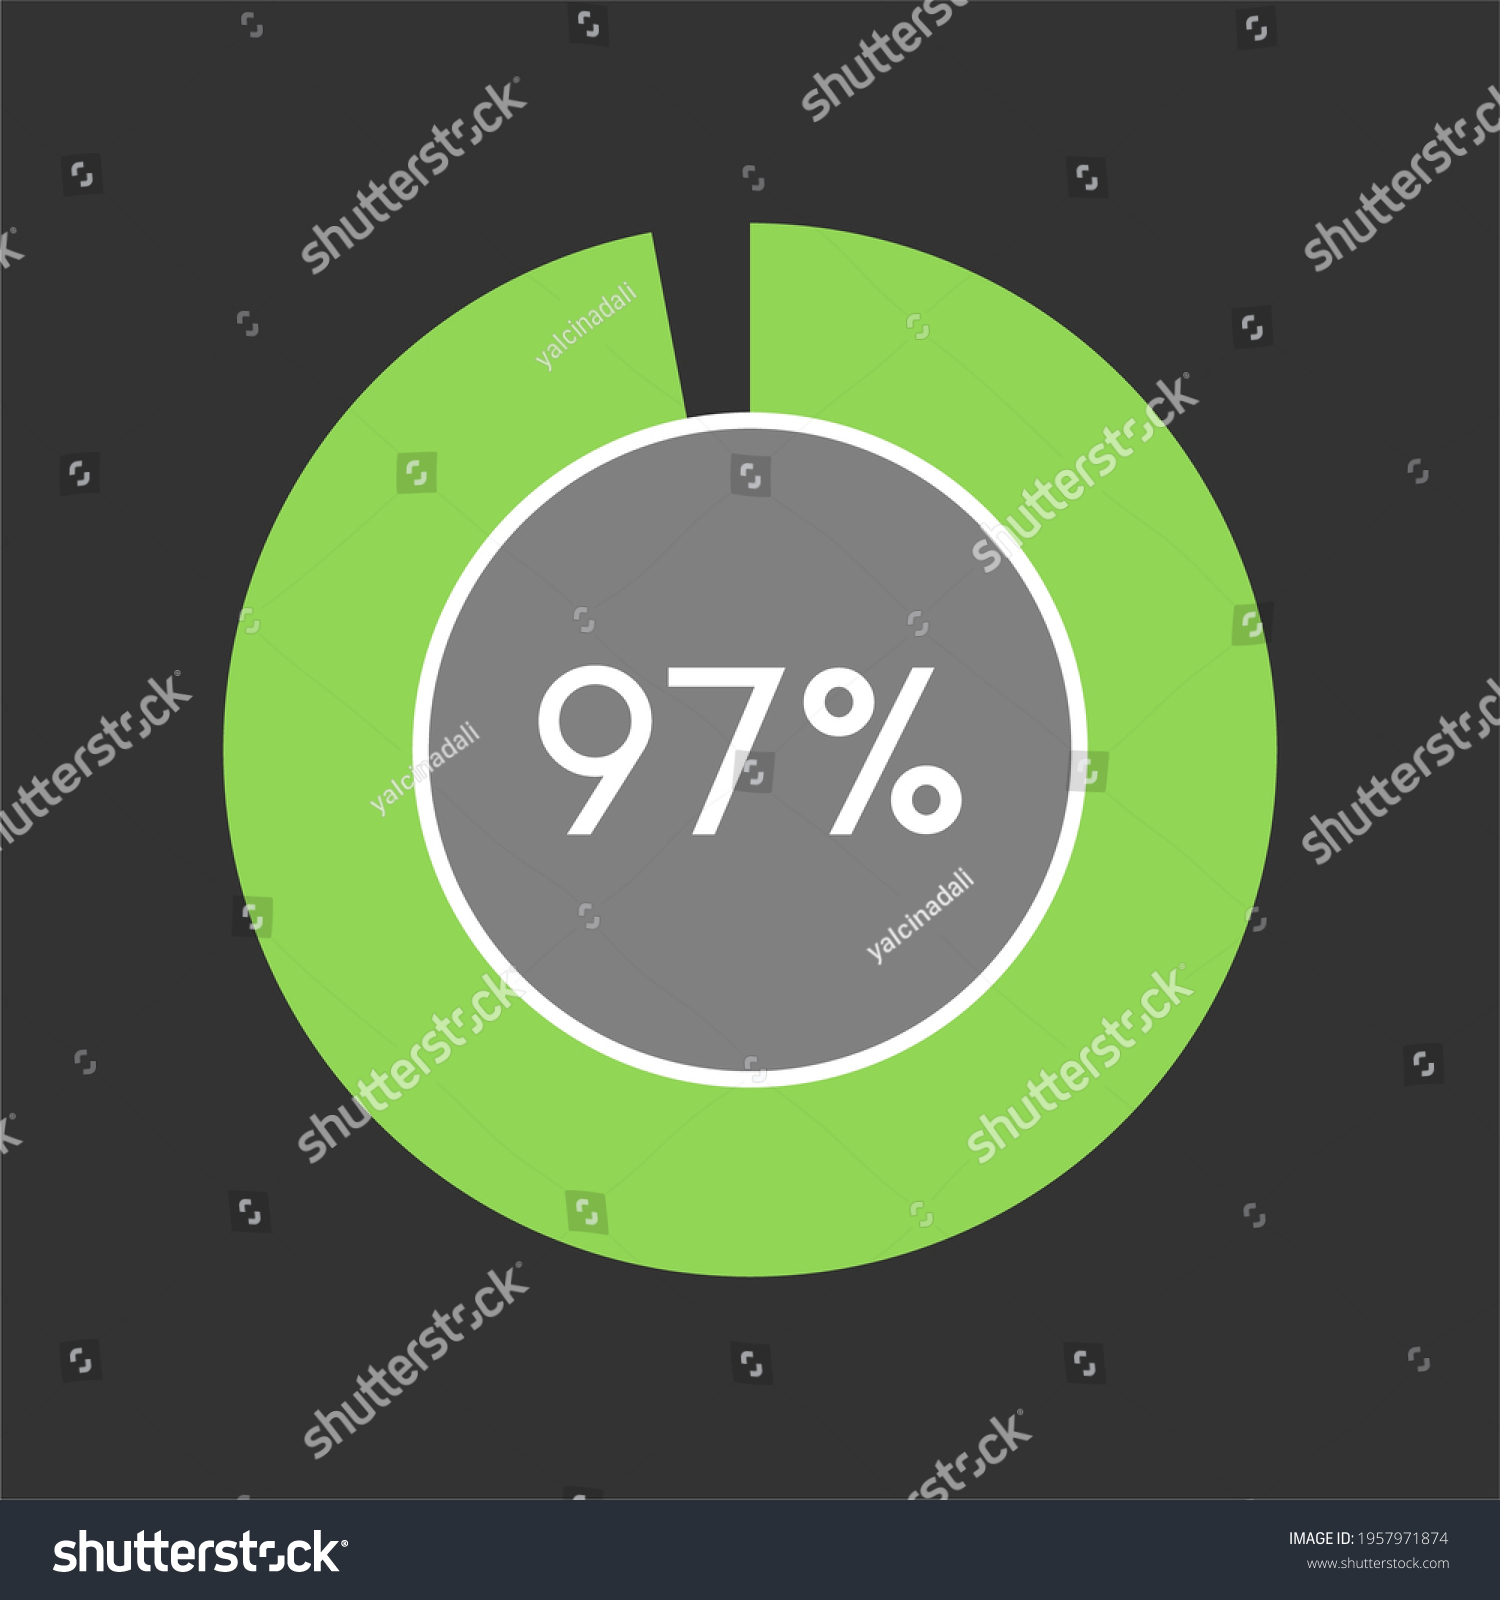 SVG of 97 percent, circle percentage diagram on black background vector illustration. svg